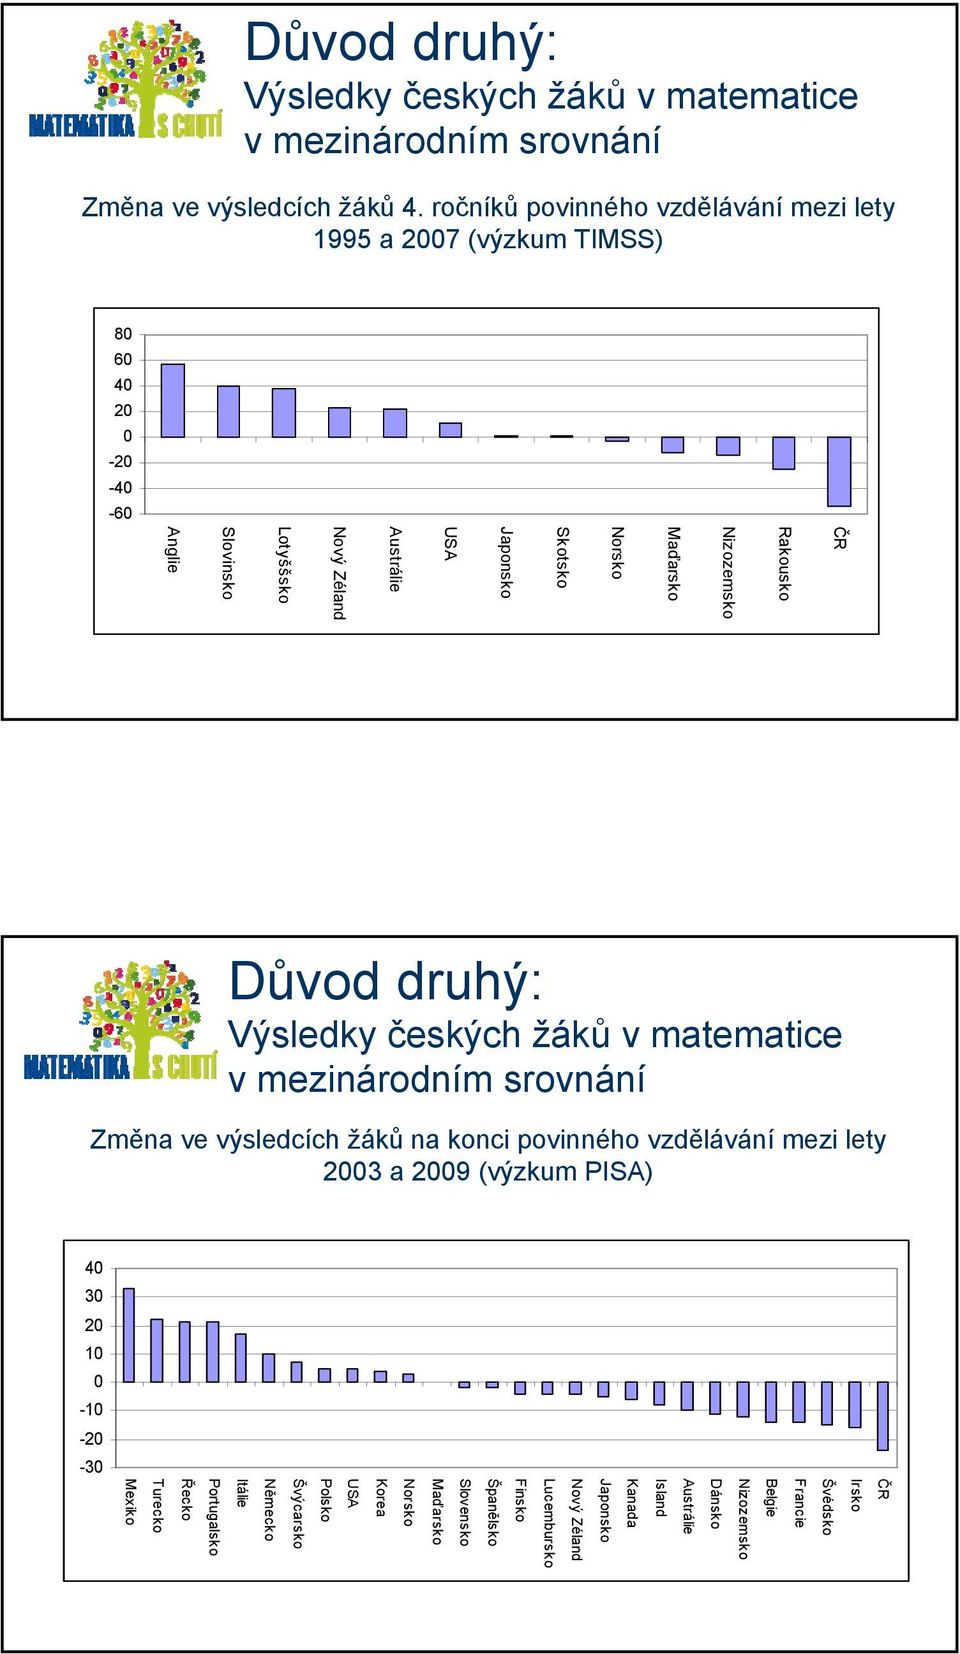 Lotyššsko Slovinsko Anglie Důvod druhý: Výsledky českých žáků v matematice v mezinárodním srovnání Změna ve výsledcích žáků na konci povinného vzdělávání mezi lety 2003 a 2009